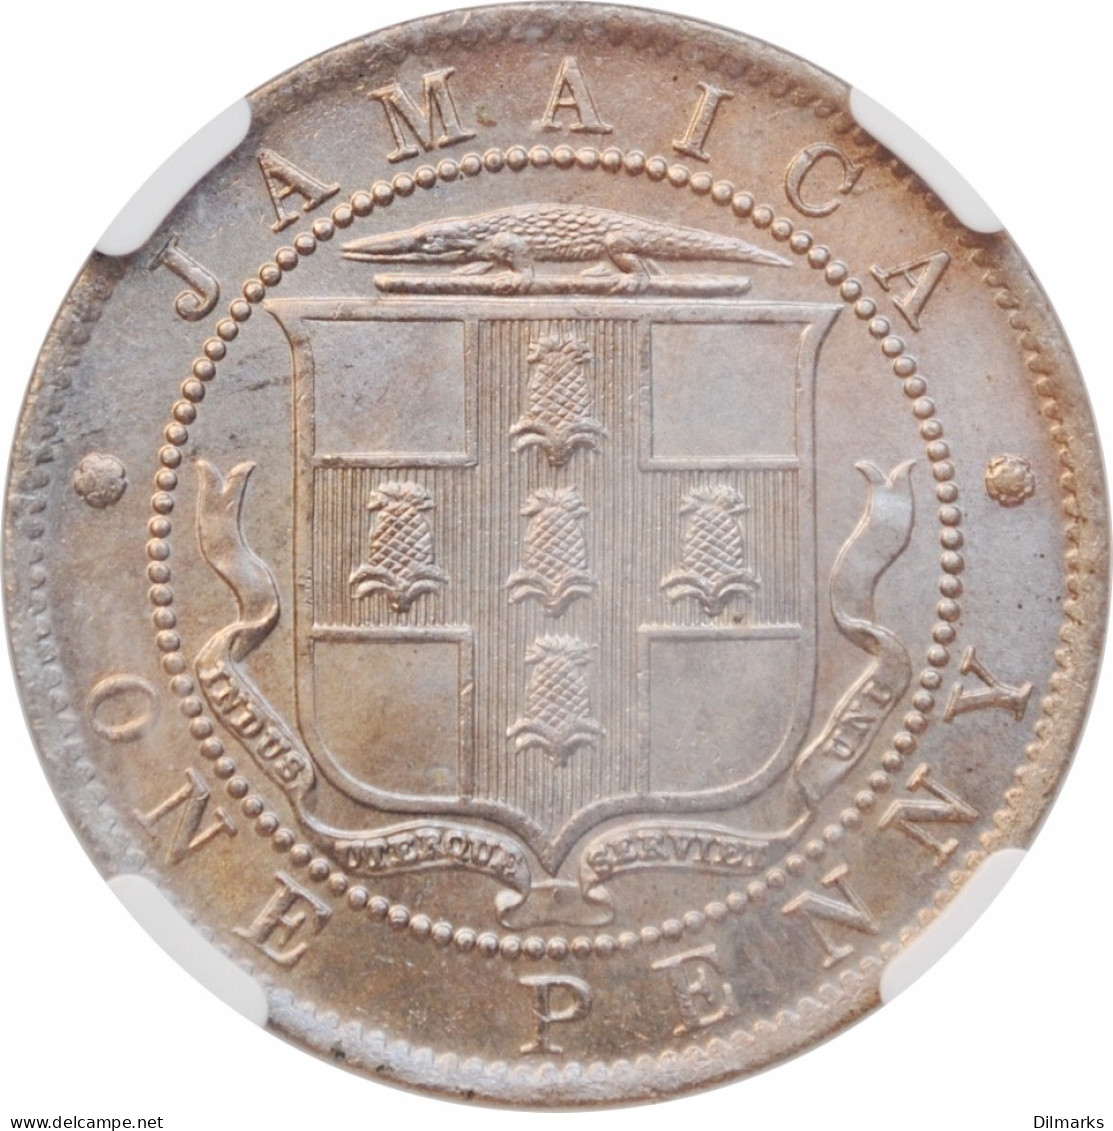 Jamaica 1 Penny 1910, NGC MS66, &quot;King Edward VII (1902 - 1910)&quot; - Autres – Afrique